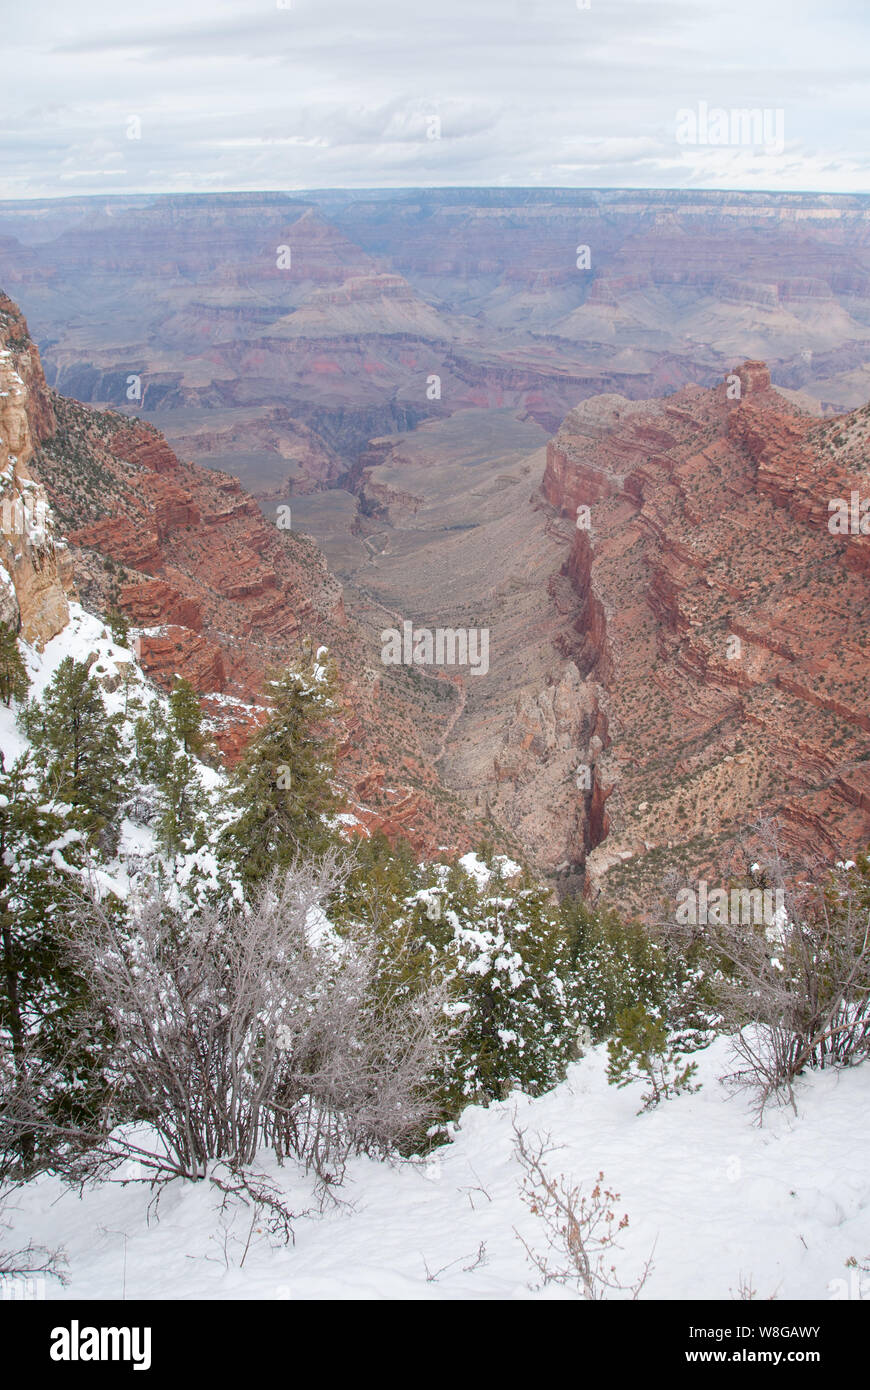 L'heure d'hiver dans le Grand canyon quand la neige est tombée et montre la profondeur de la beauté de l'une des sept merveilles du monde. Banque D'Images